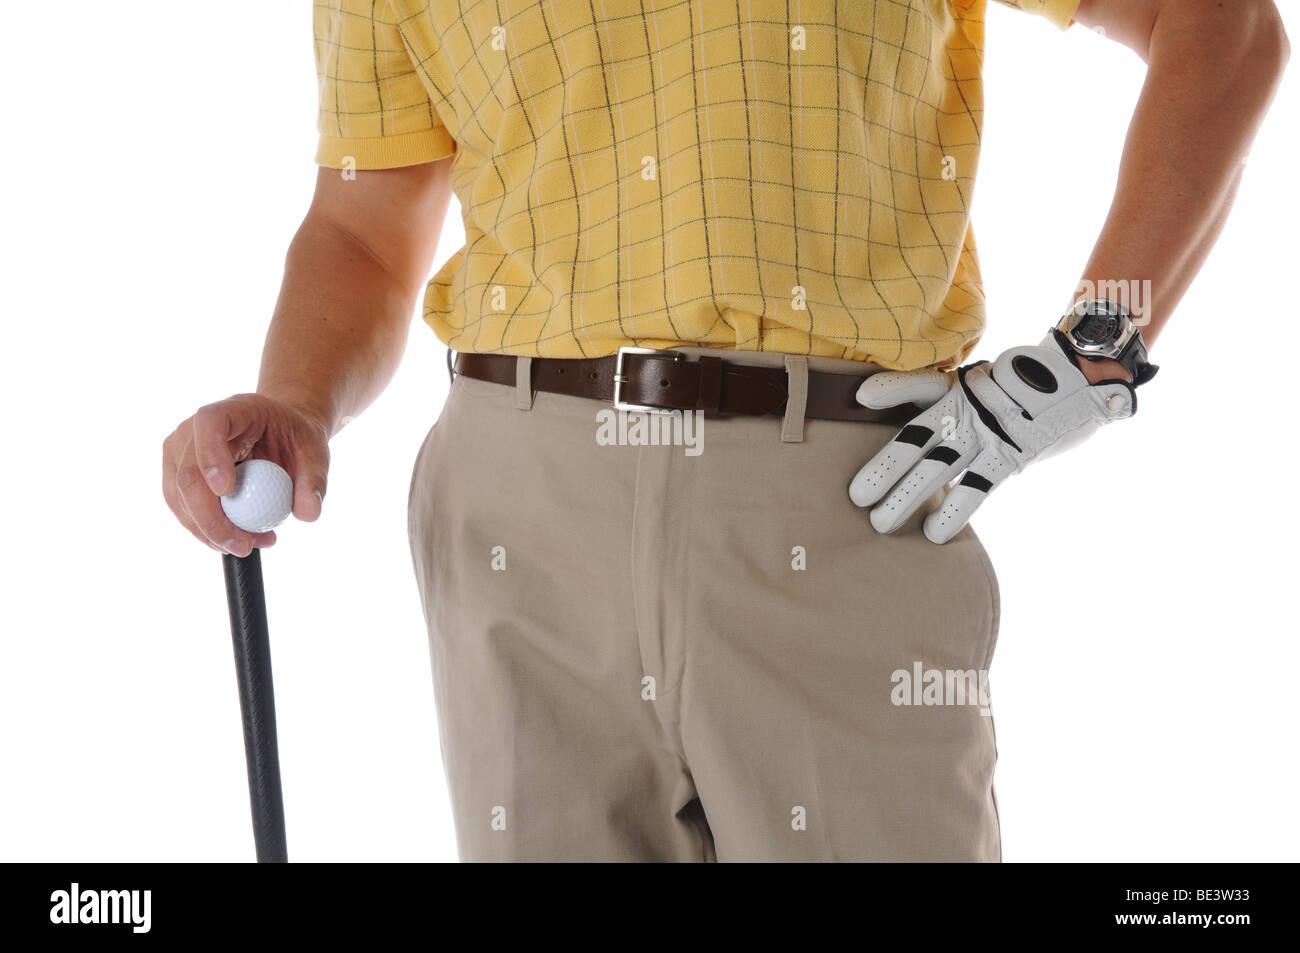 Il Golfer close up studio shot isolato su uno sfondo bianco Foto Stock